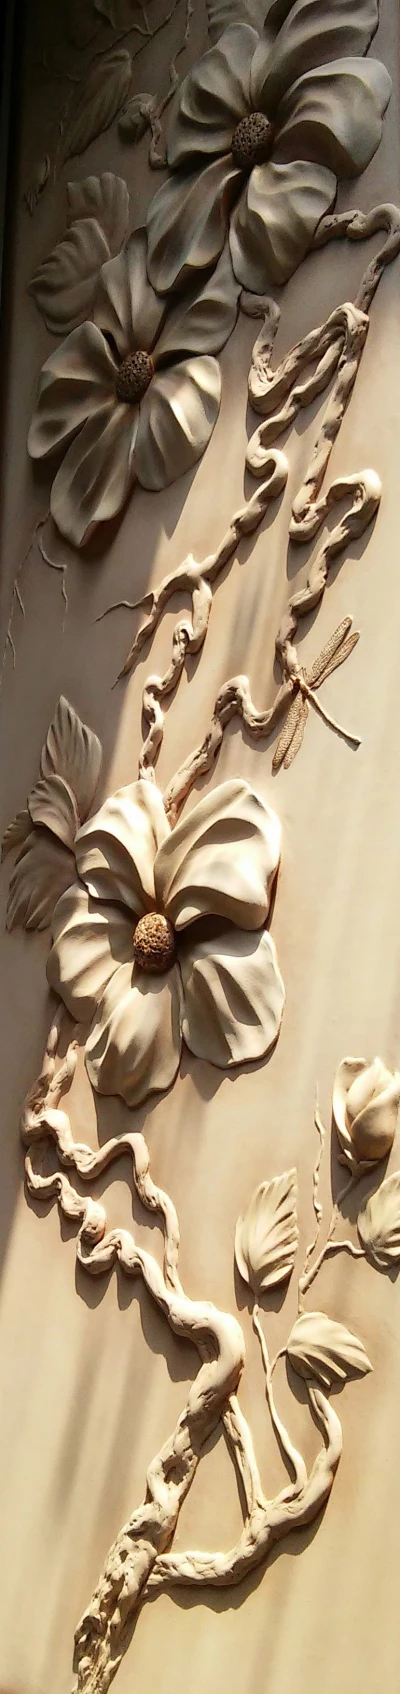 Барельеф, цветочное панно